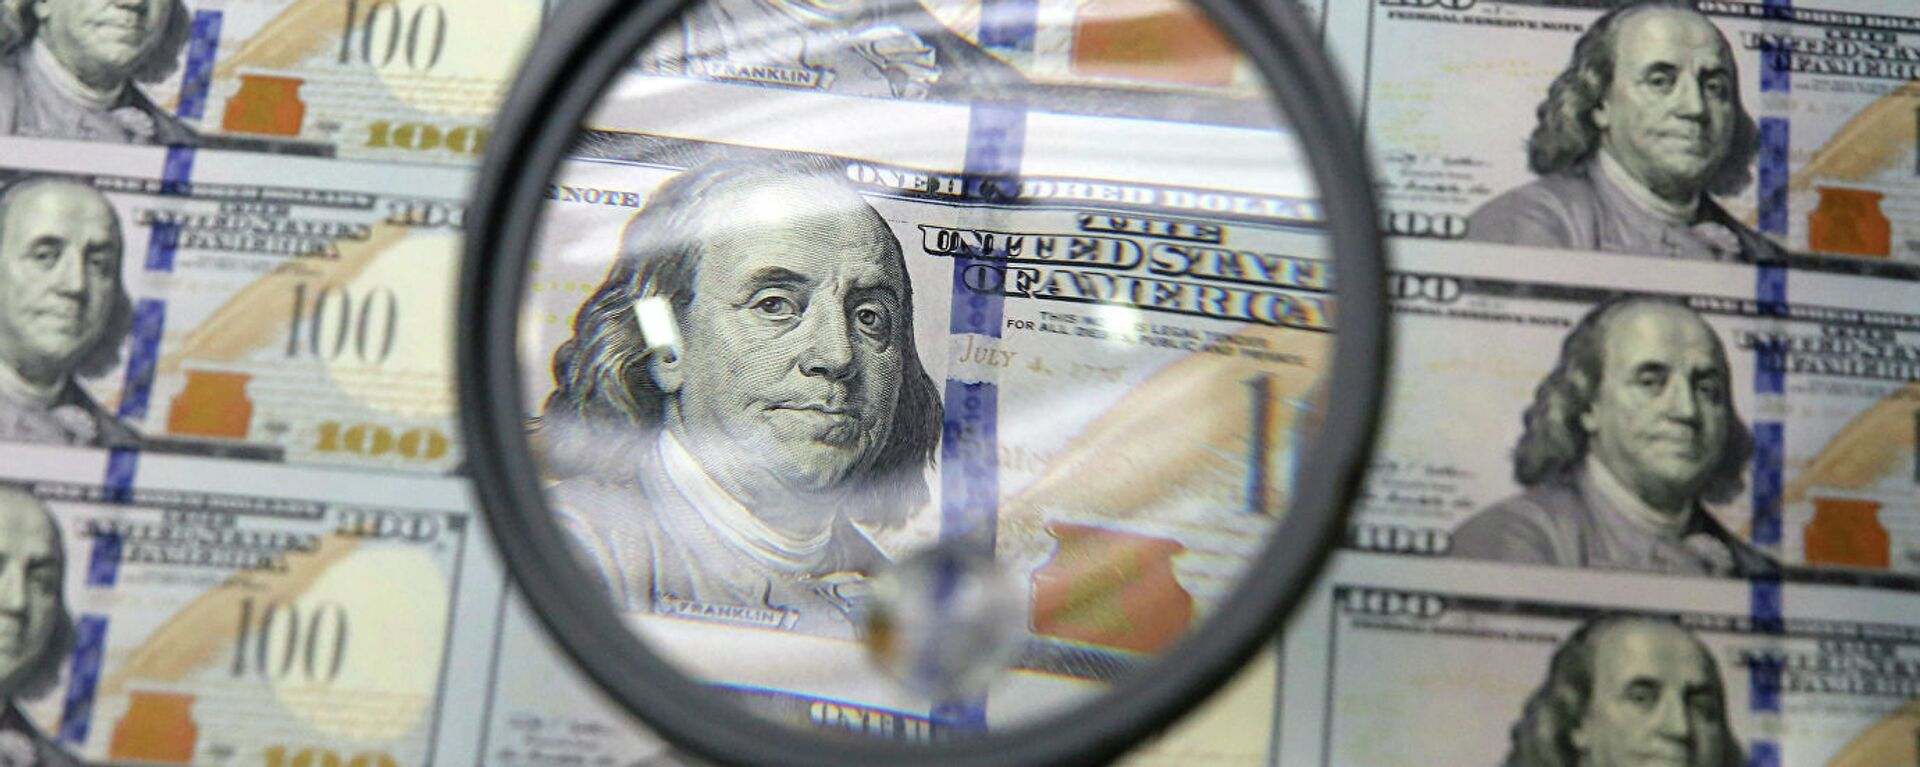 Світове панування долара підірвано: що буде з американською валютою далі